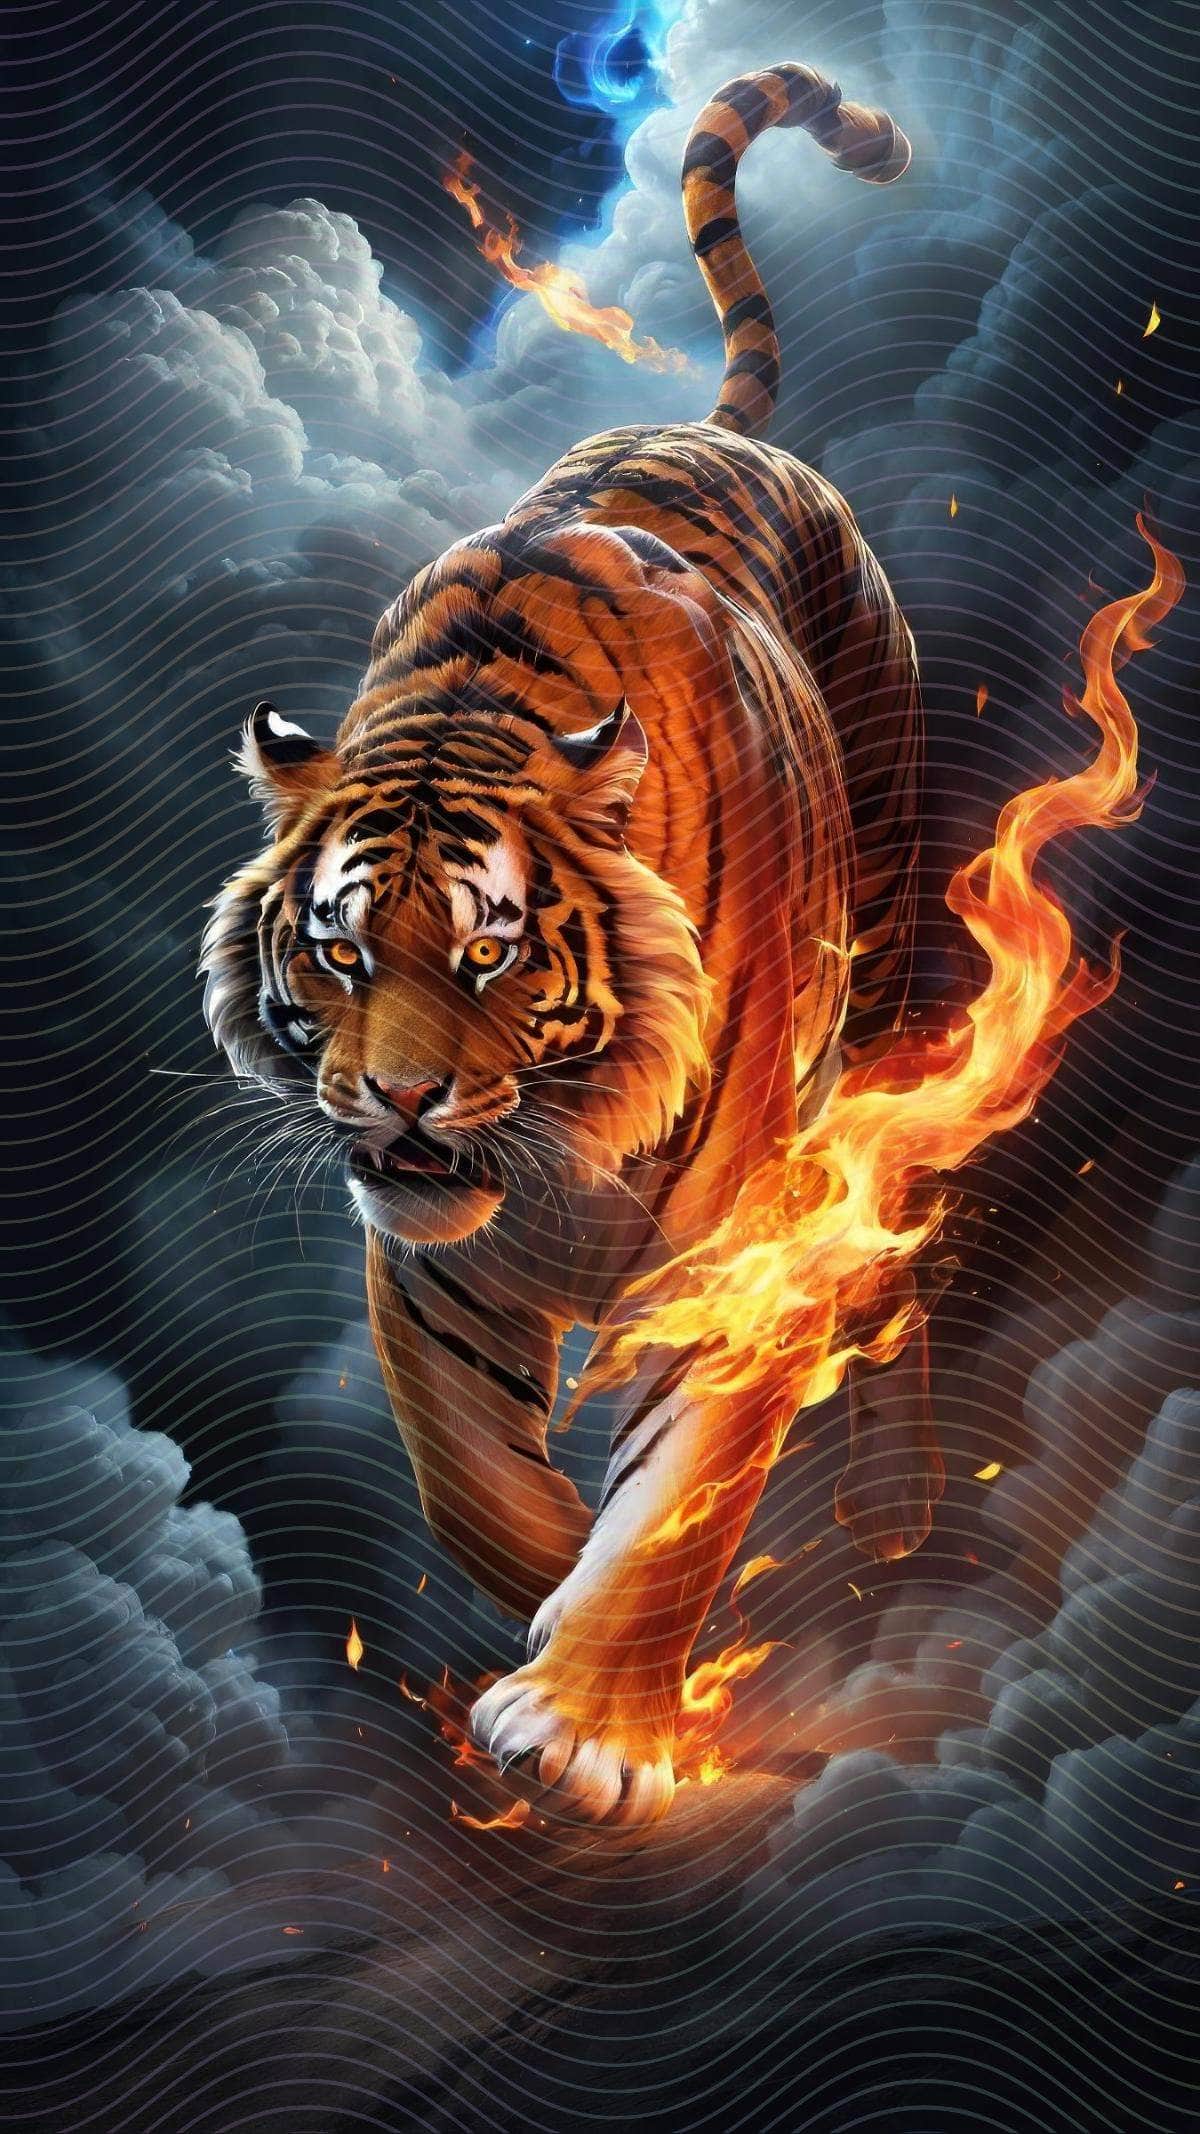 A Tiger Running Through A Cloud Of Fire